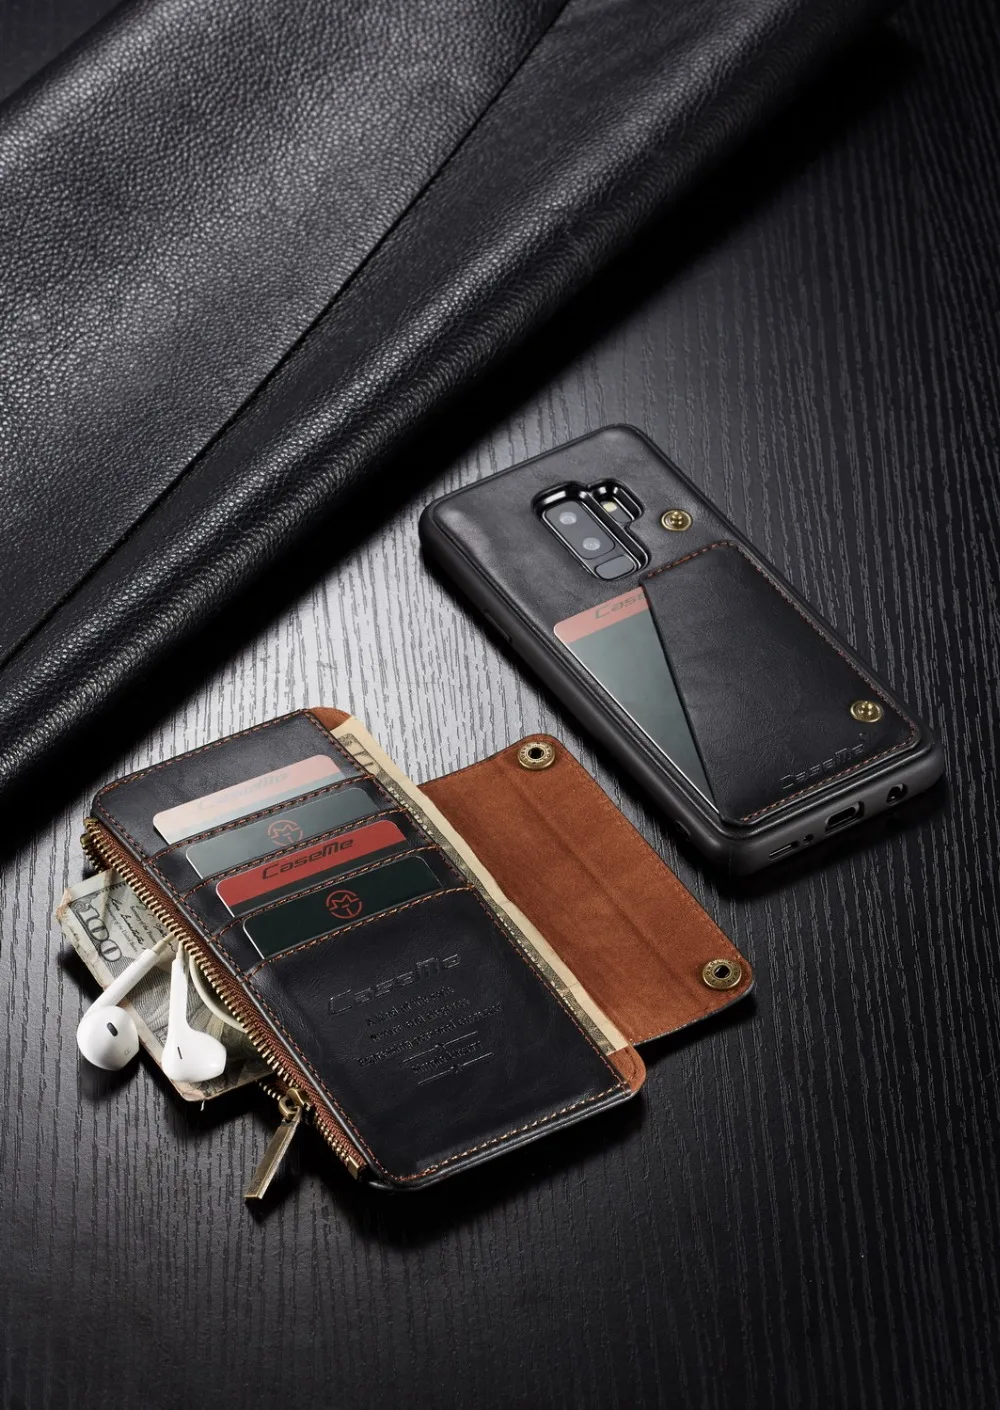 Съемный кожаный чехол-бумажник для samsung Galaxy S9 Plus, карман на молнии, отделение для кредитных карт, чехол для samsung S9 Plus, чехол